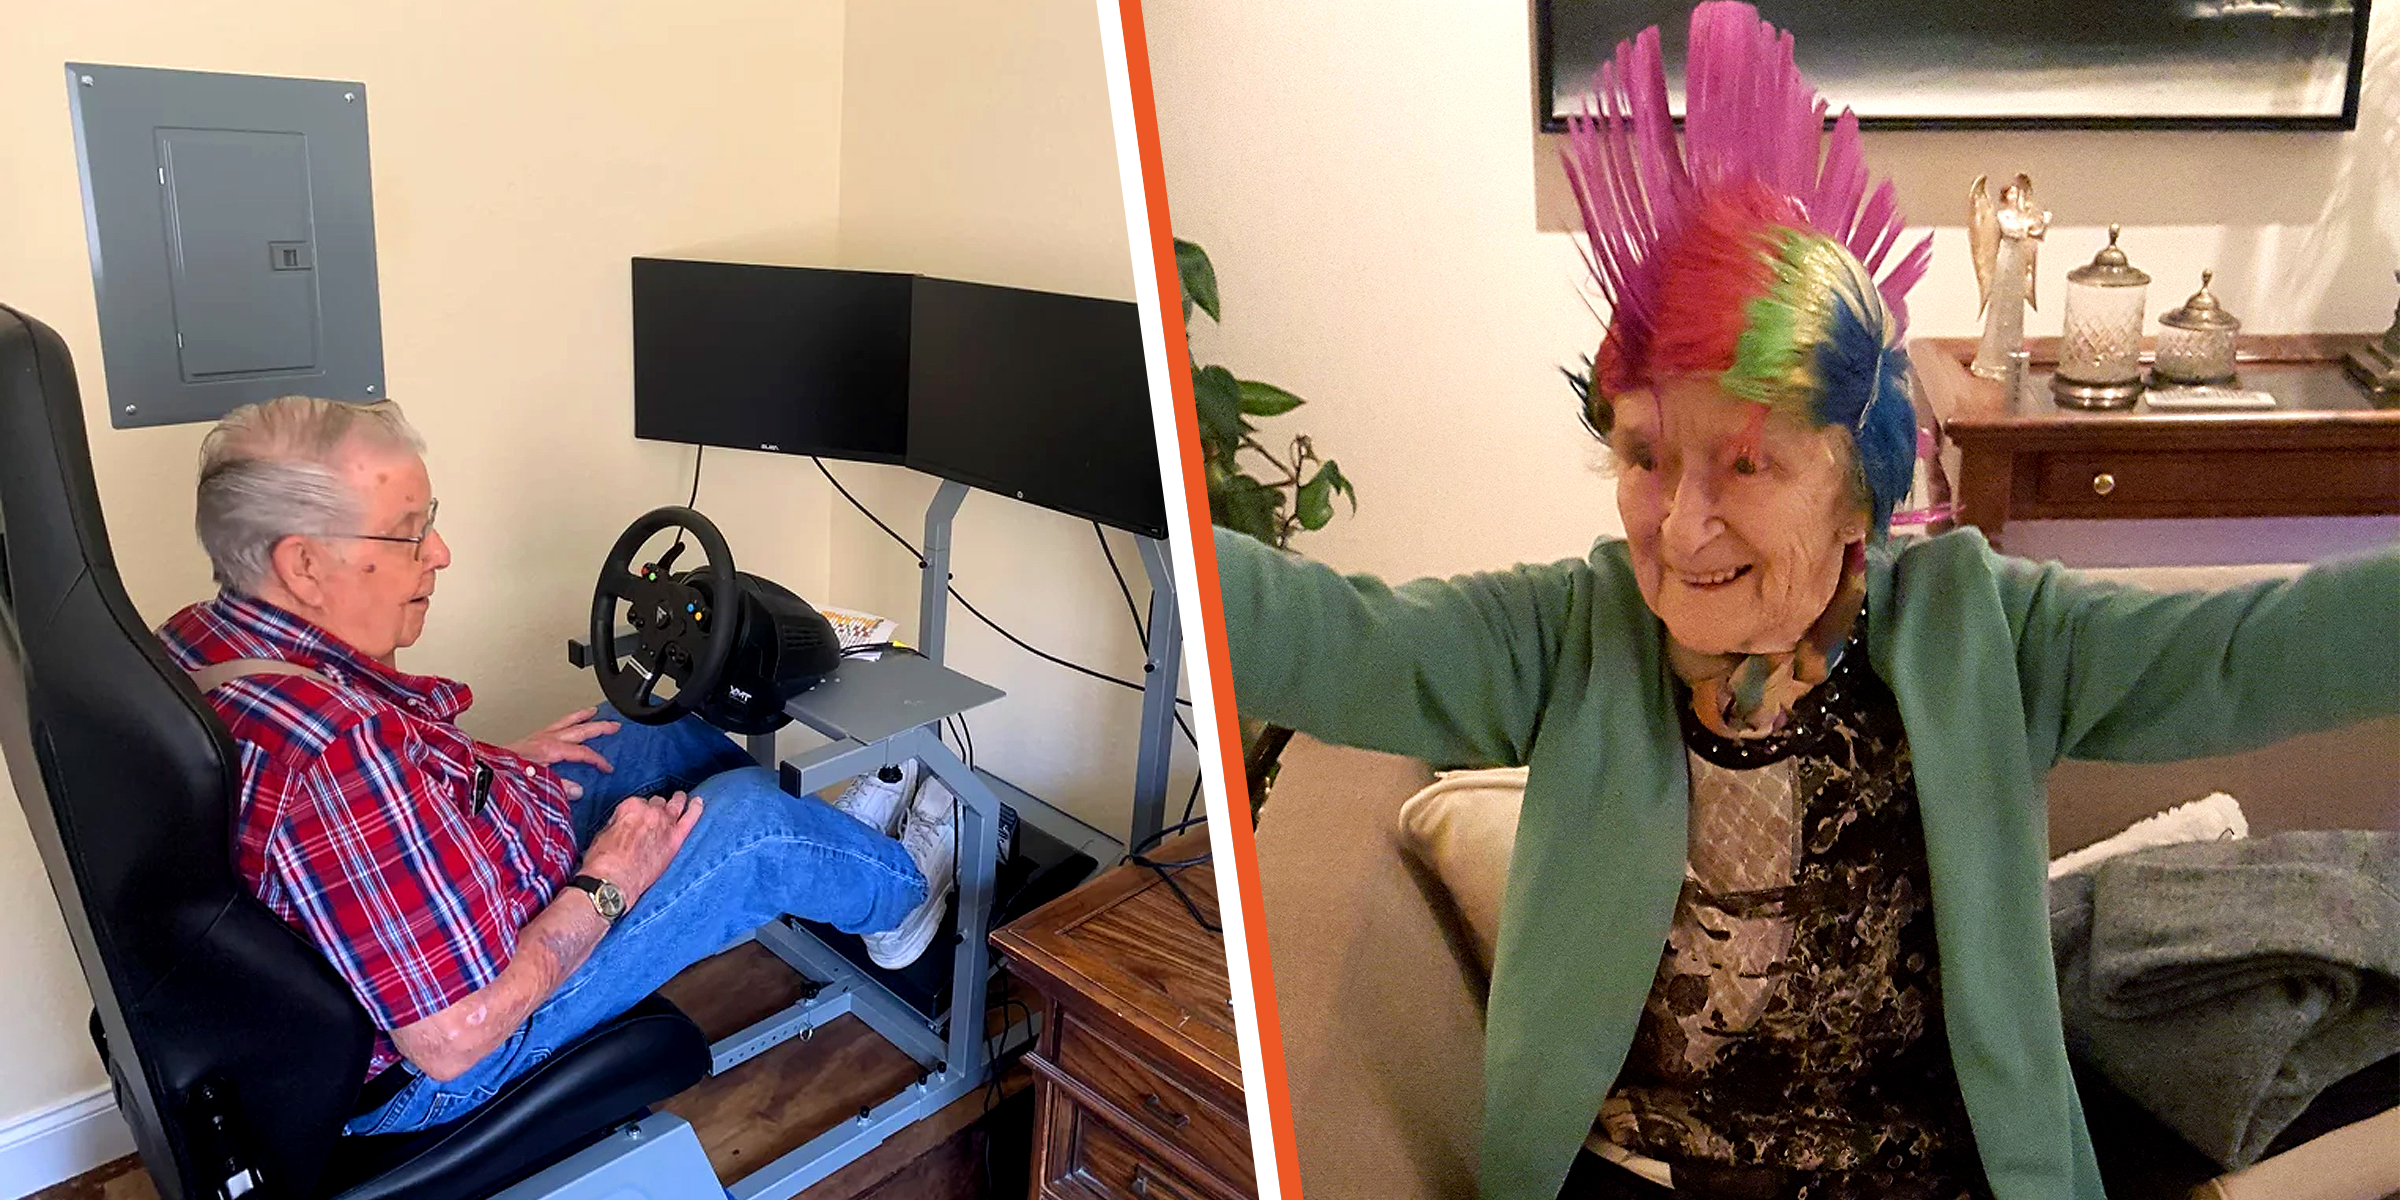 Un grand-père avec son équipement de jeu | Grand-mère avec une crête colorée | Source : Reddit.com/gaming | Imgur.com/Fatuous